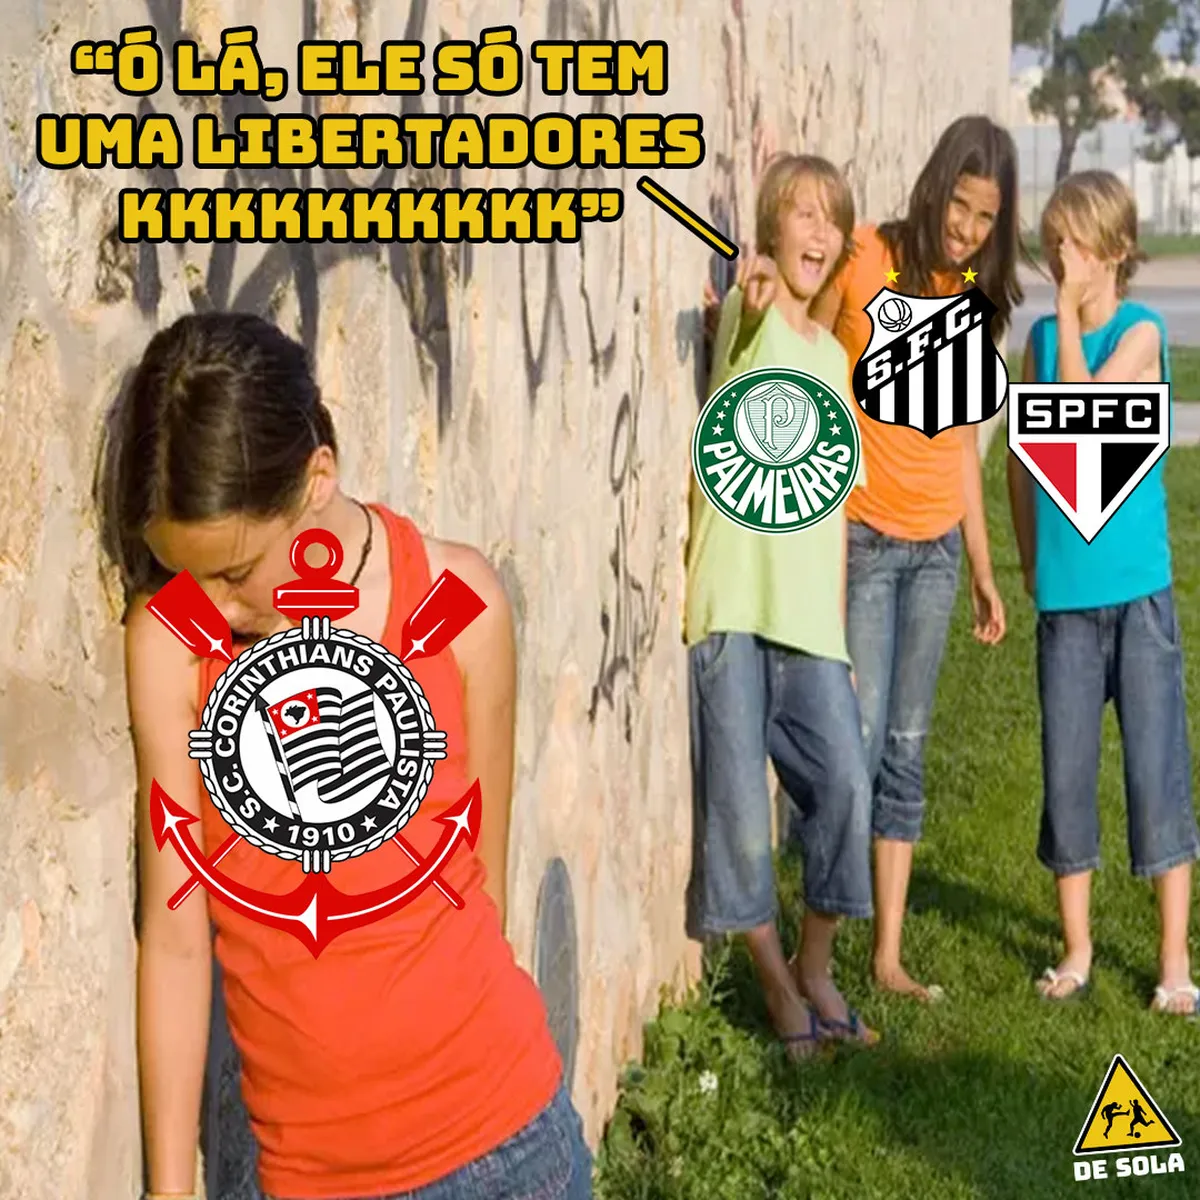 O Corinthians sofrendo bullying dos amiguinhos quando o assunto é Libertadores Resultado